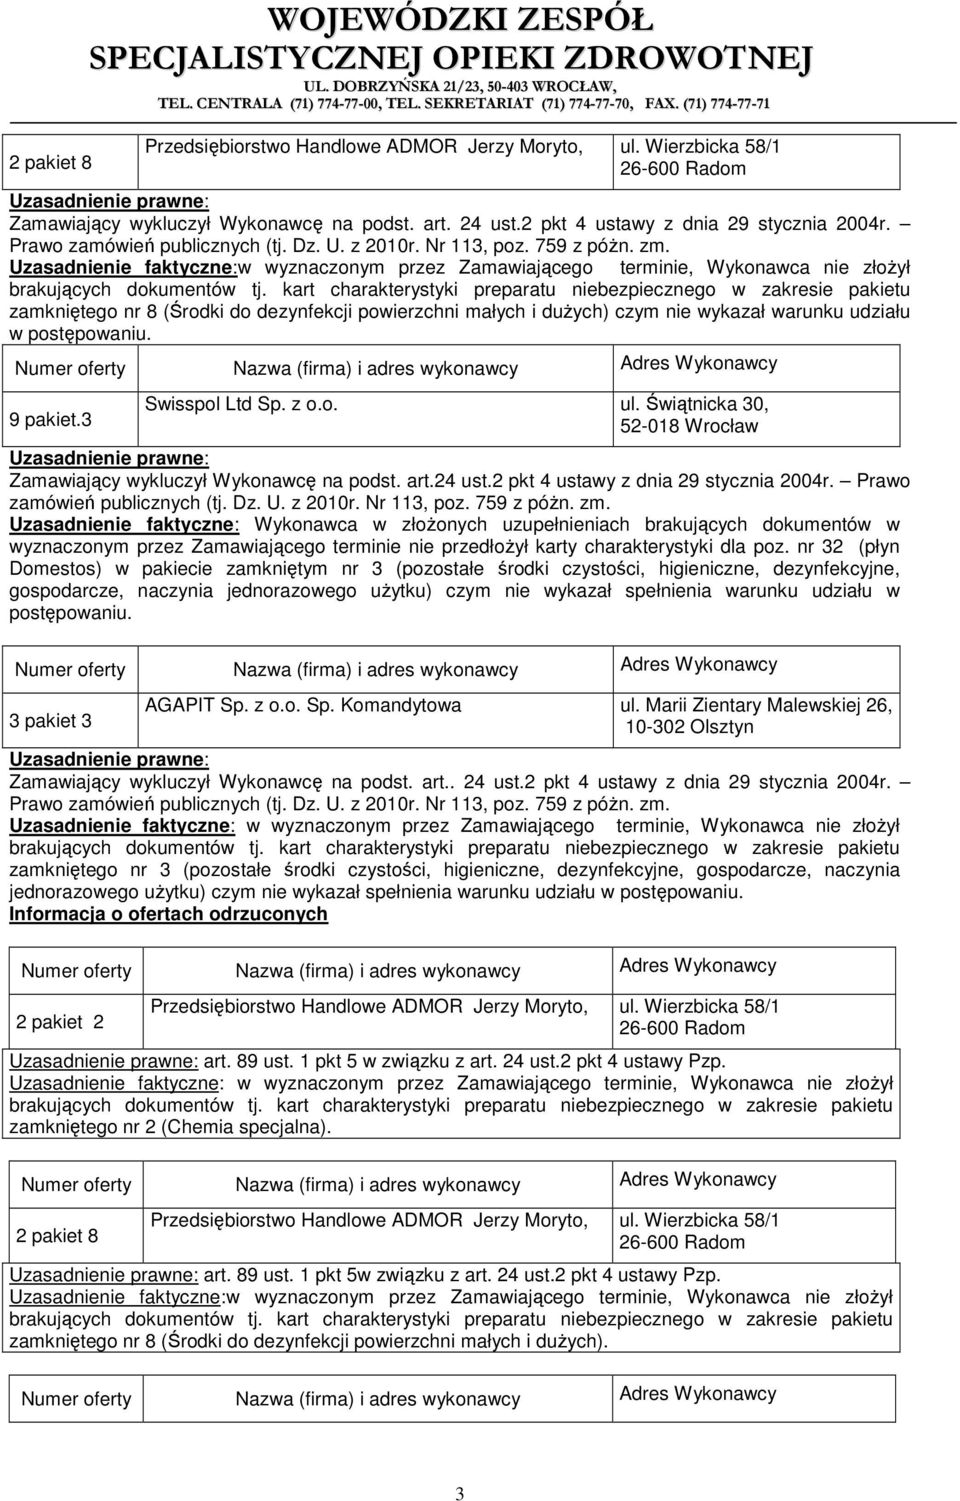 postępowaniu. 9 pakiet.3 Swisspol Ltd Sp. z o.o. ul. Świątnicka 30, 52-018 Wrocław Zamawiający wykluczył Wykonawcę na podst. art.24 ust.2 pkt 4 ustawy z dnia 29 stycznia 2004r.